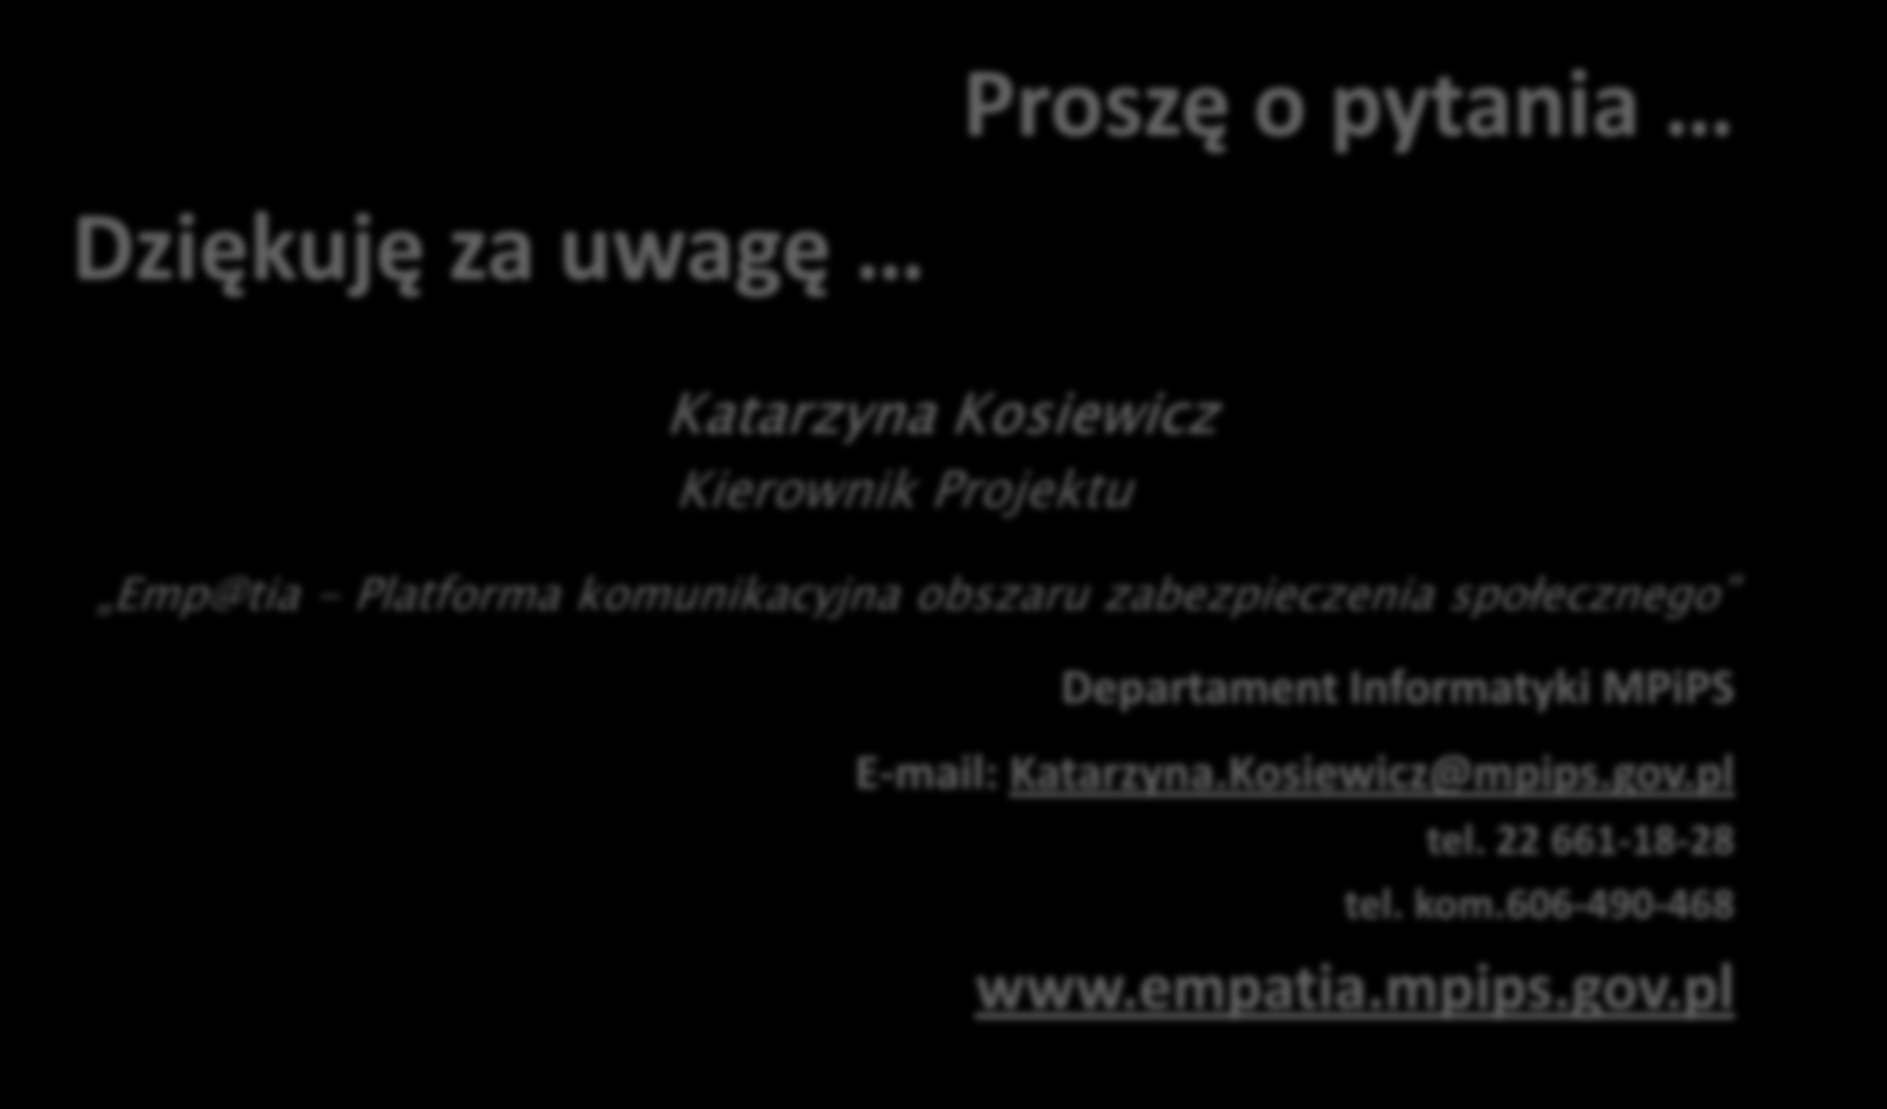 Proszę o pytania Dziękuję za uwagę Katarzyna Kosiewicz Kierownik Projektu Emp@tia - Platforma komunikacyjna obszaru zabezpieczenia